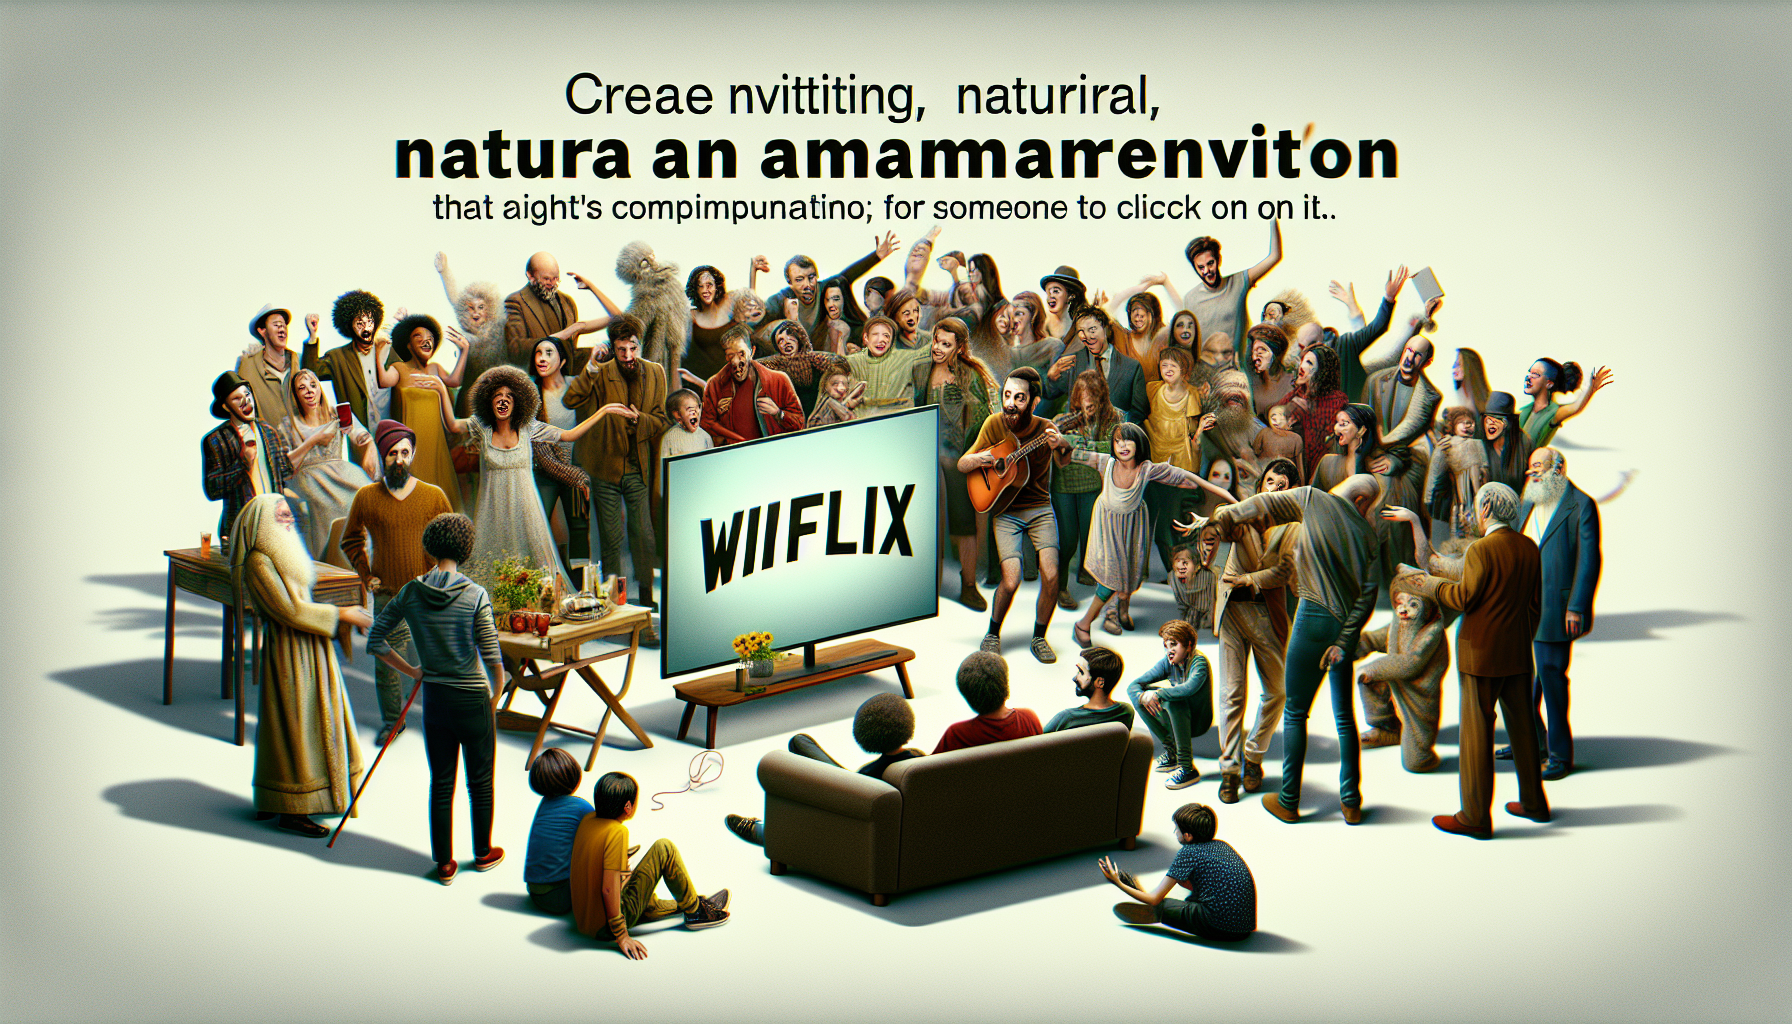 découvrez wiflix, la nouvelle plateforme de streaming qui révolutionne l'expérience cinématographique avec une multitude de films et séries à savourer.